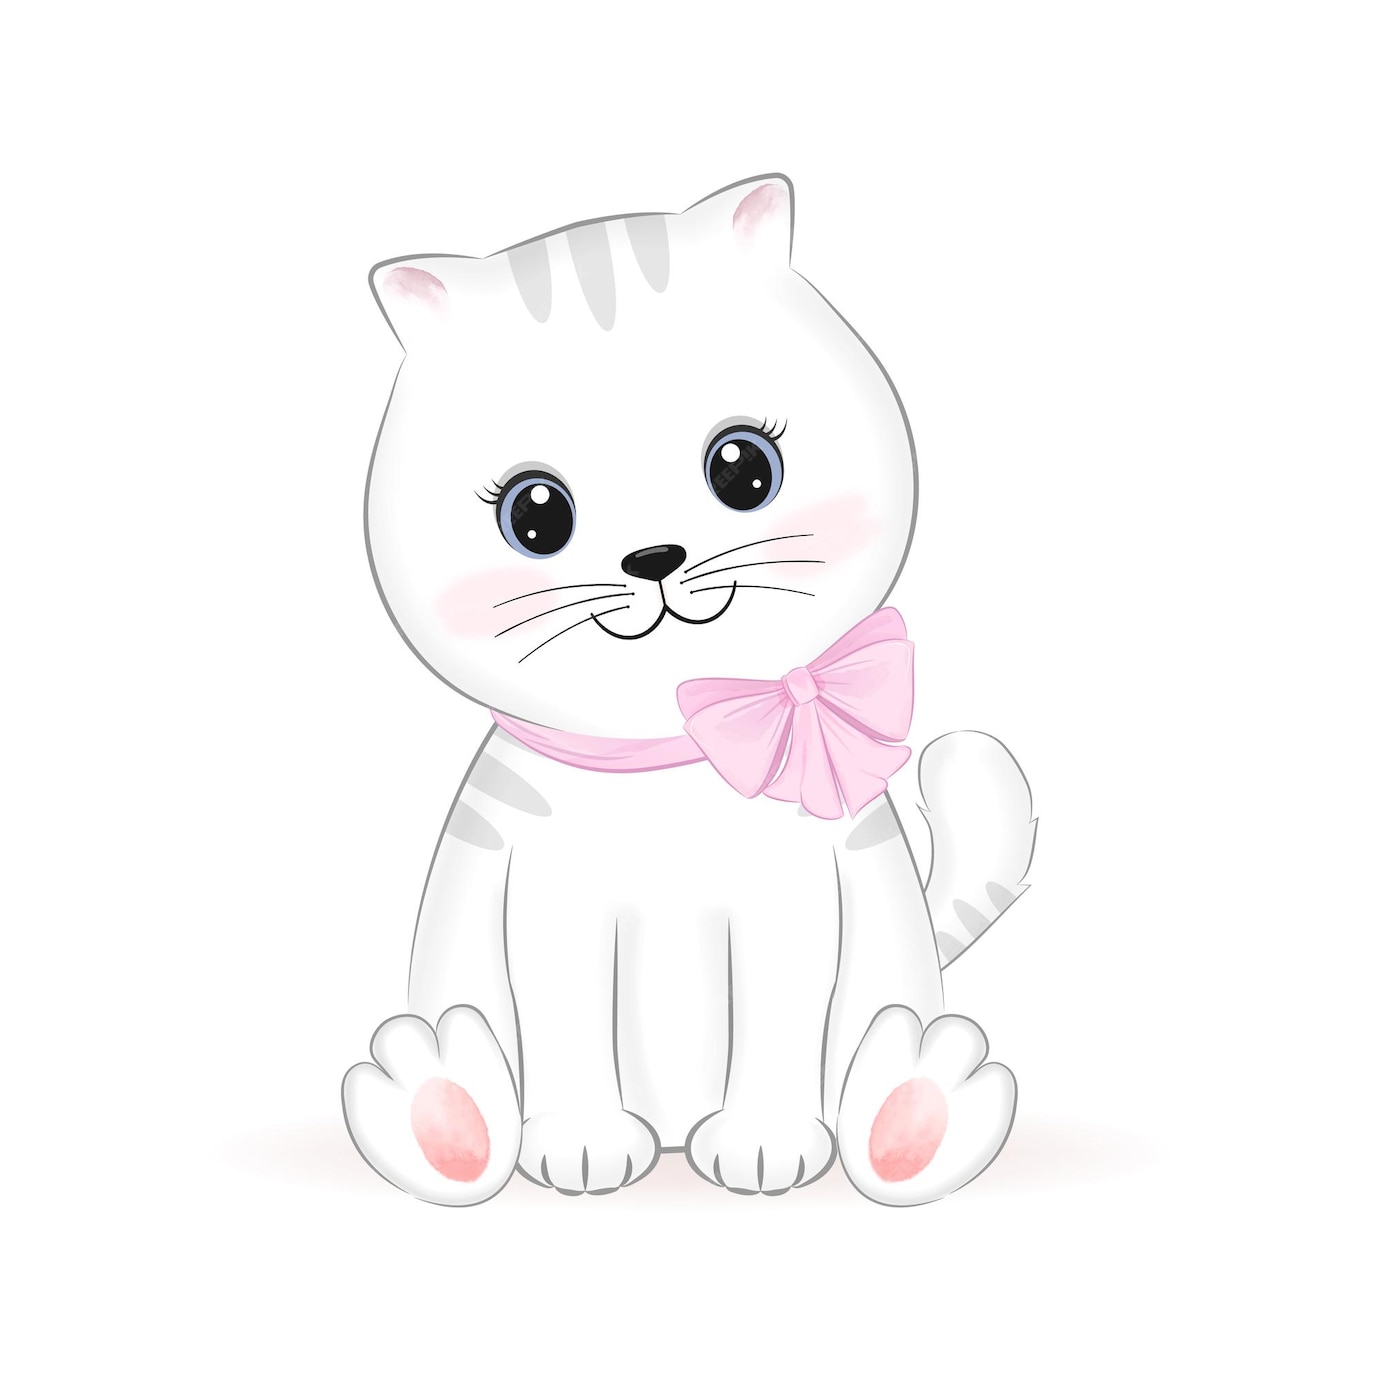 Premium Vector | Cute little white cat, animal cartoon illustration